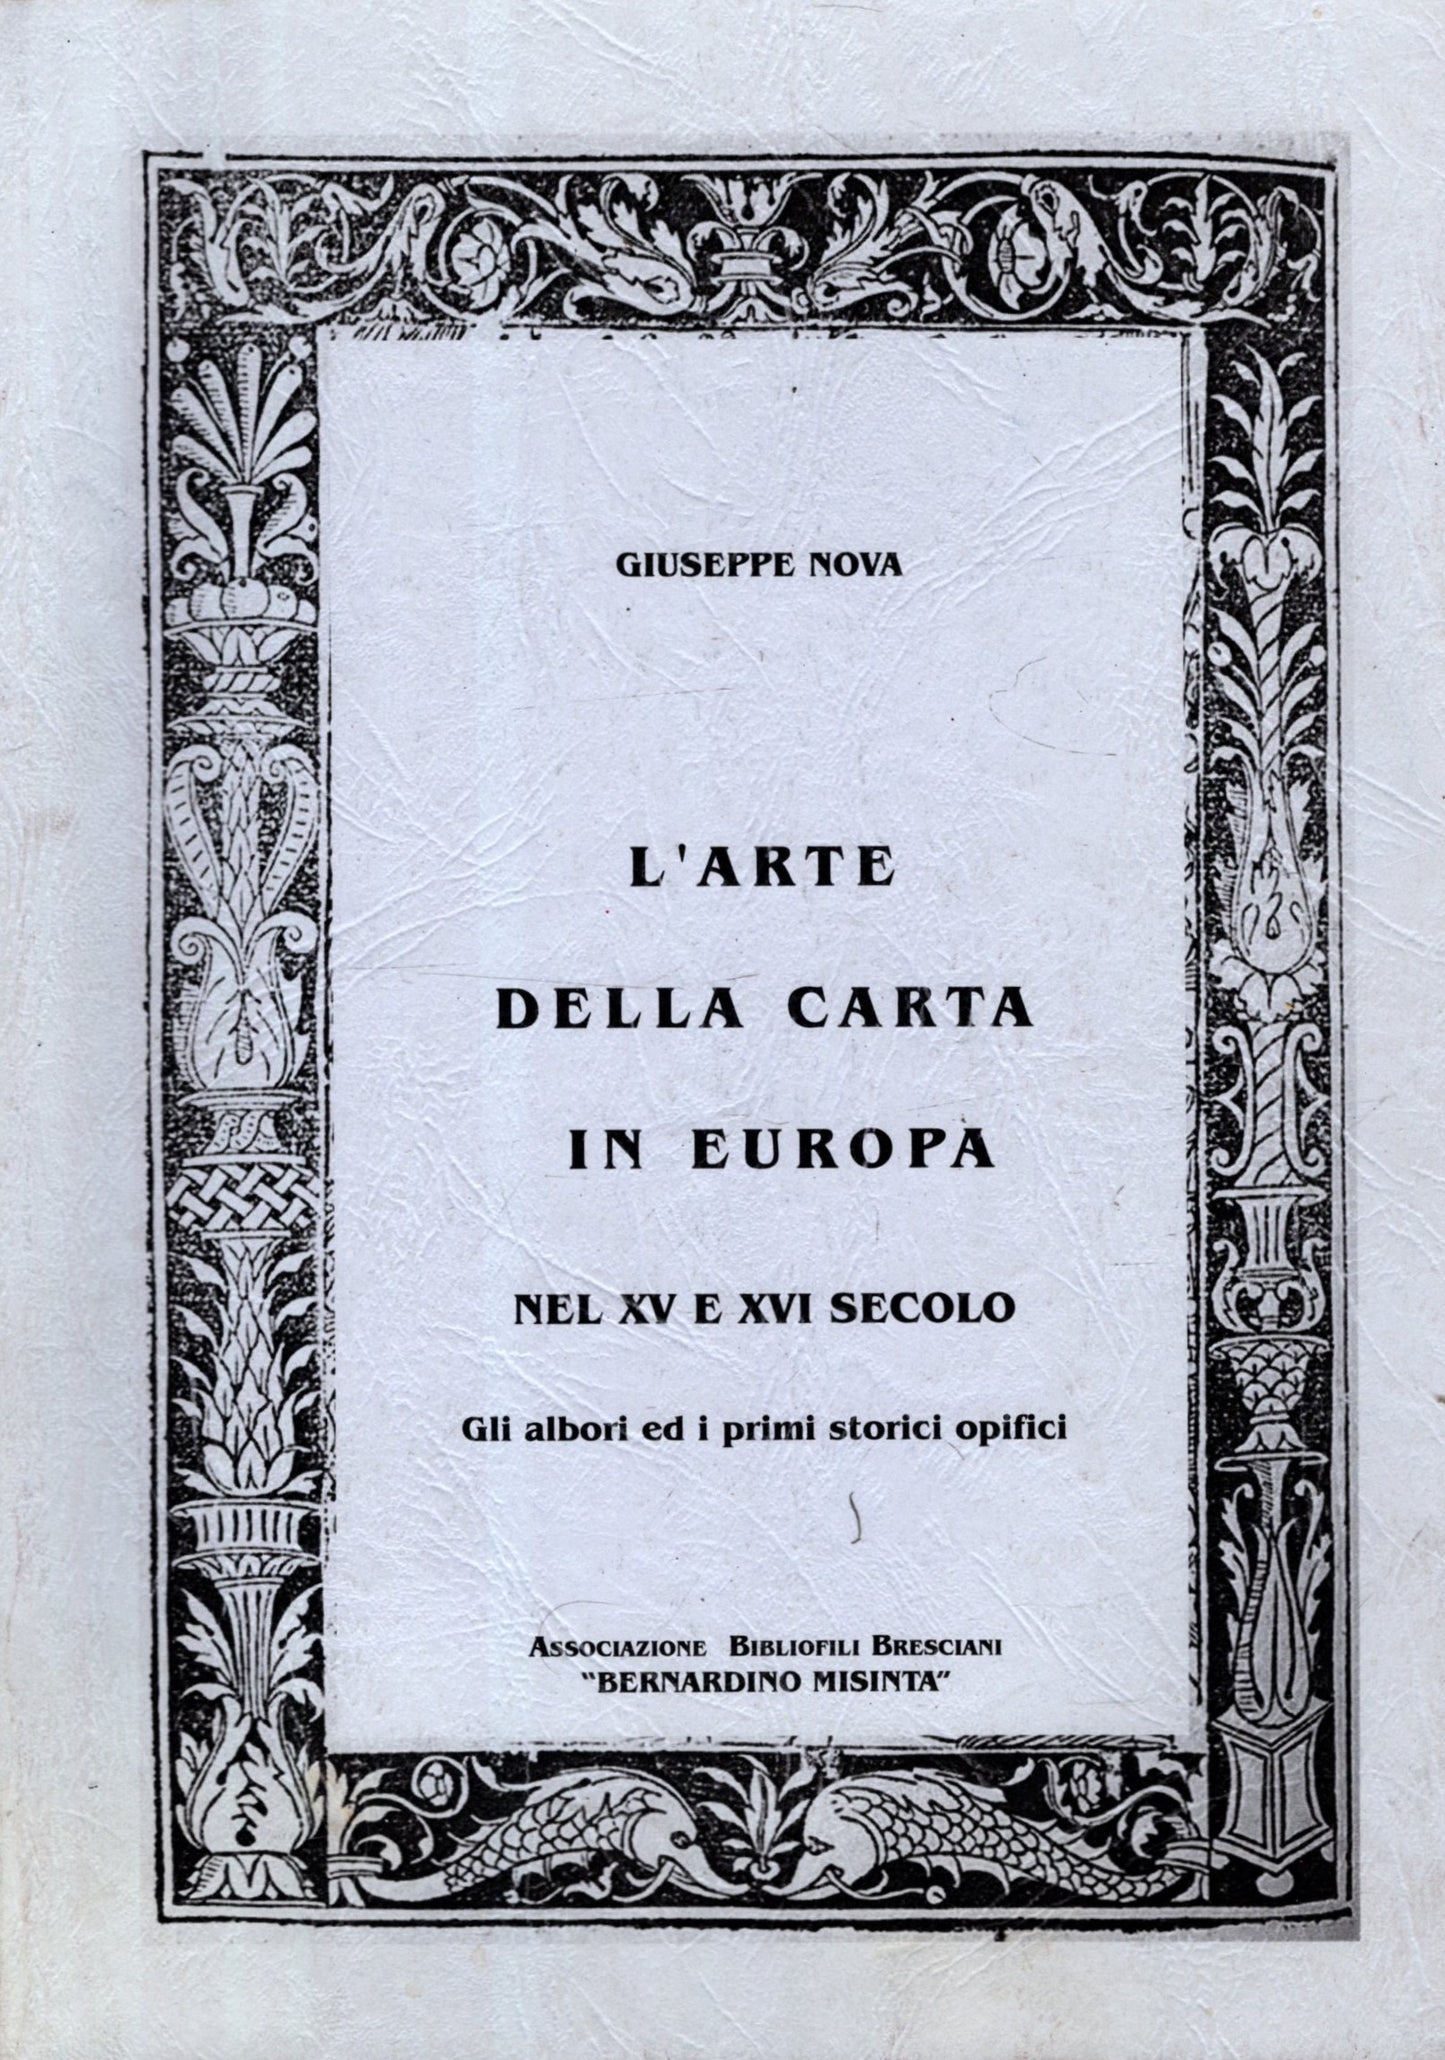 L'Arte della carta in Europa nel XV e XVI secolo. Gli albori ed i primi storici opifici